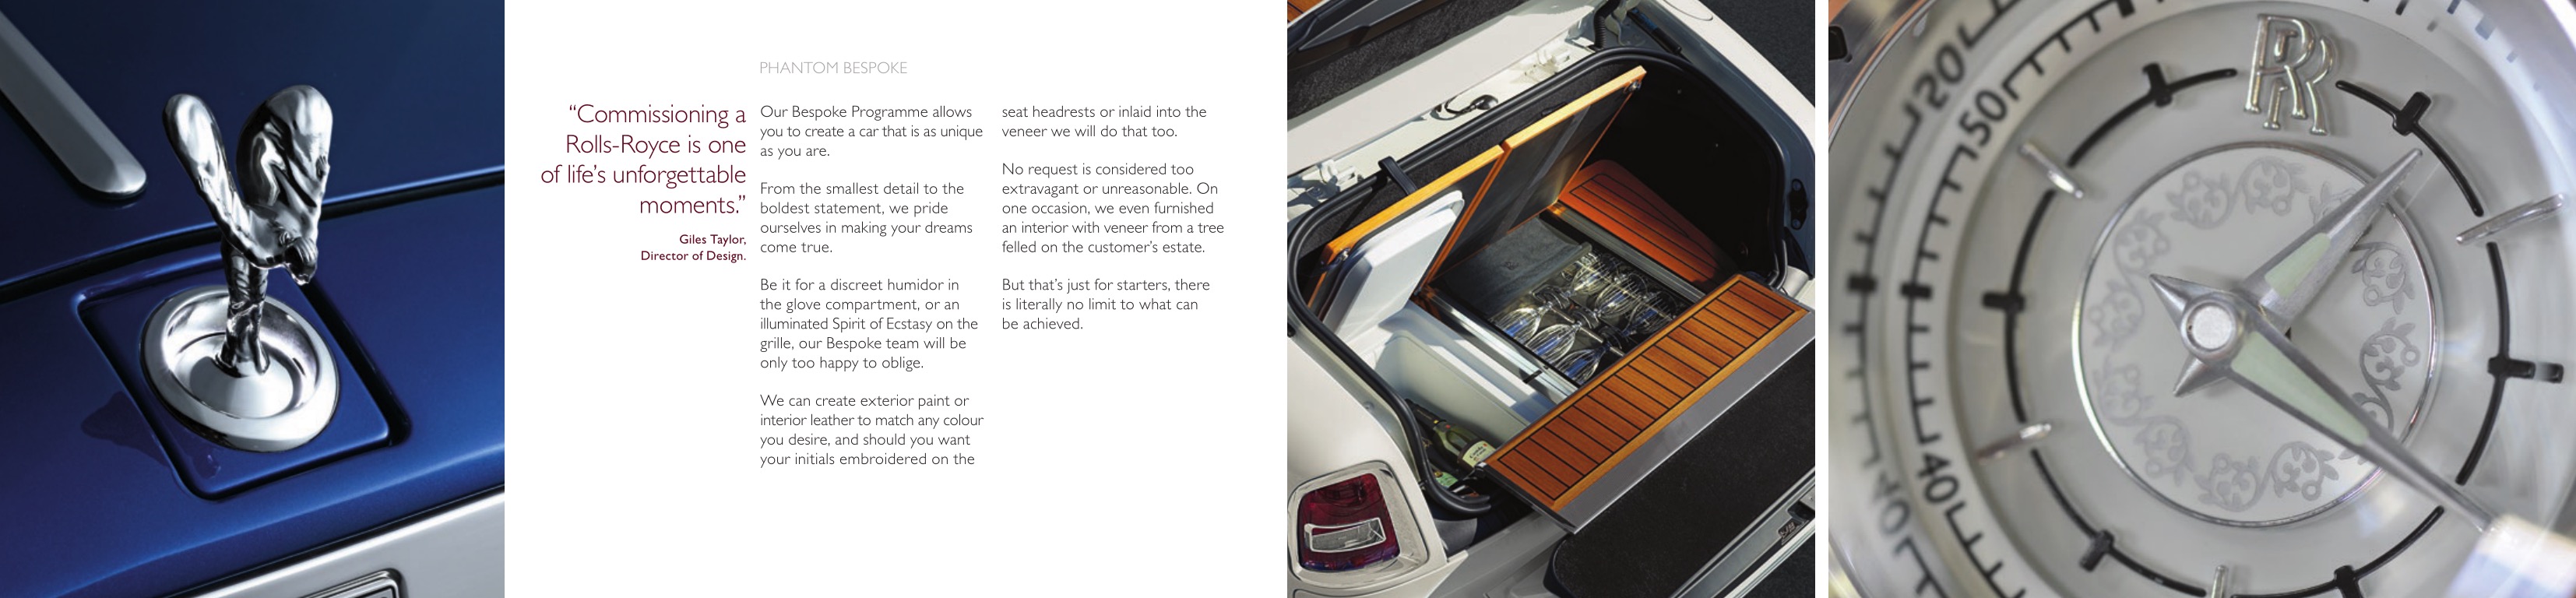 2013 Rolls-Royce Model Range Brochure Page 6